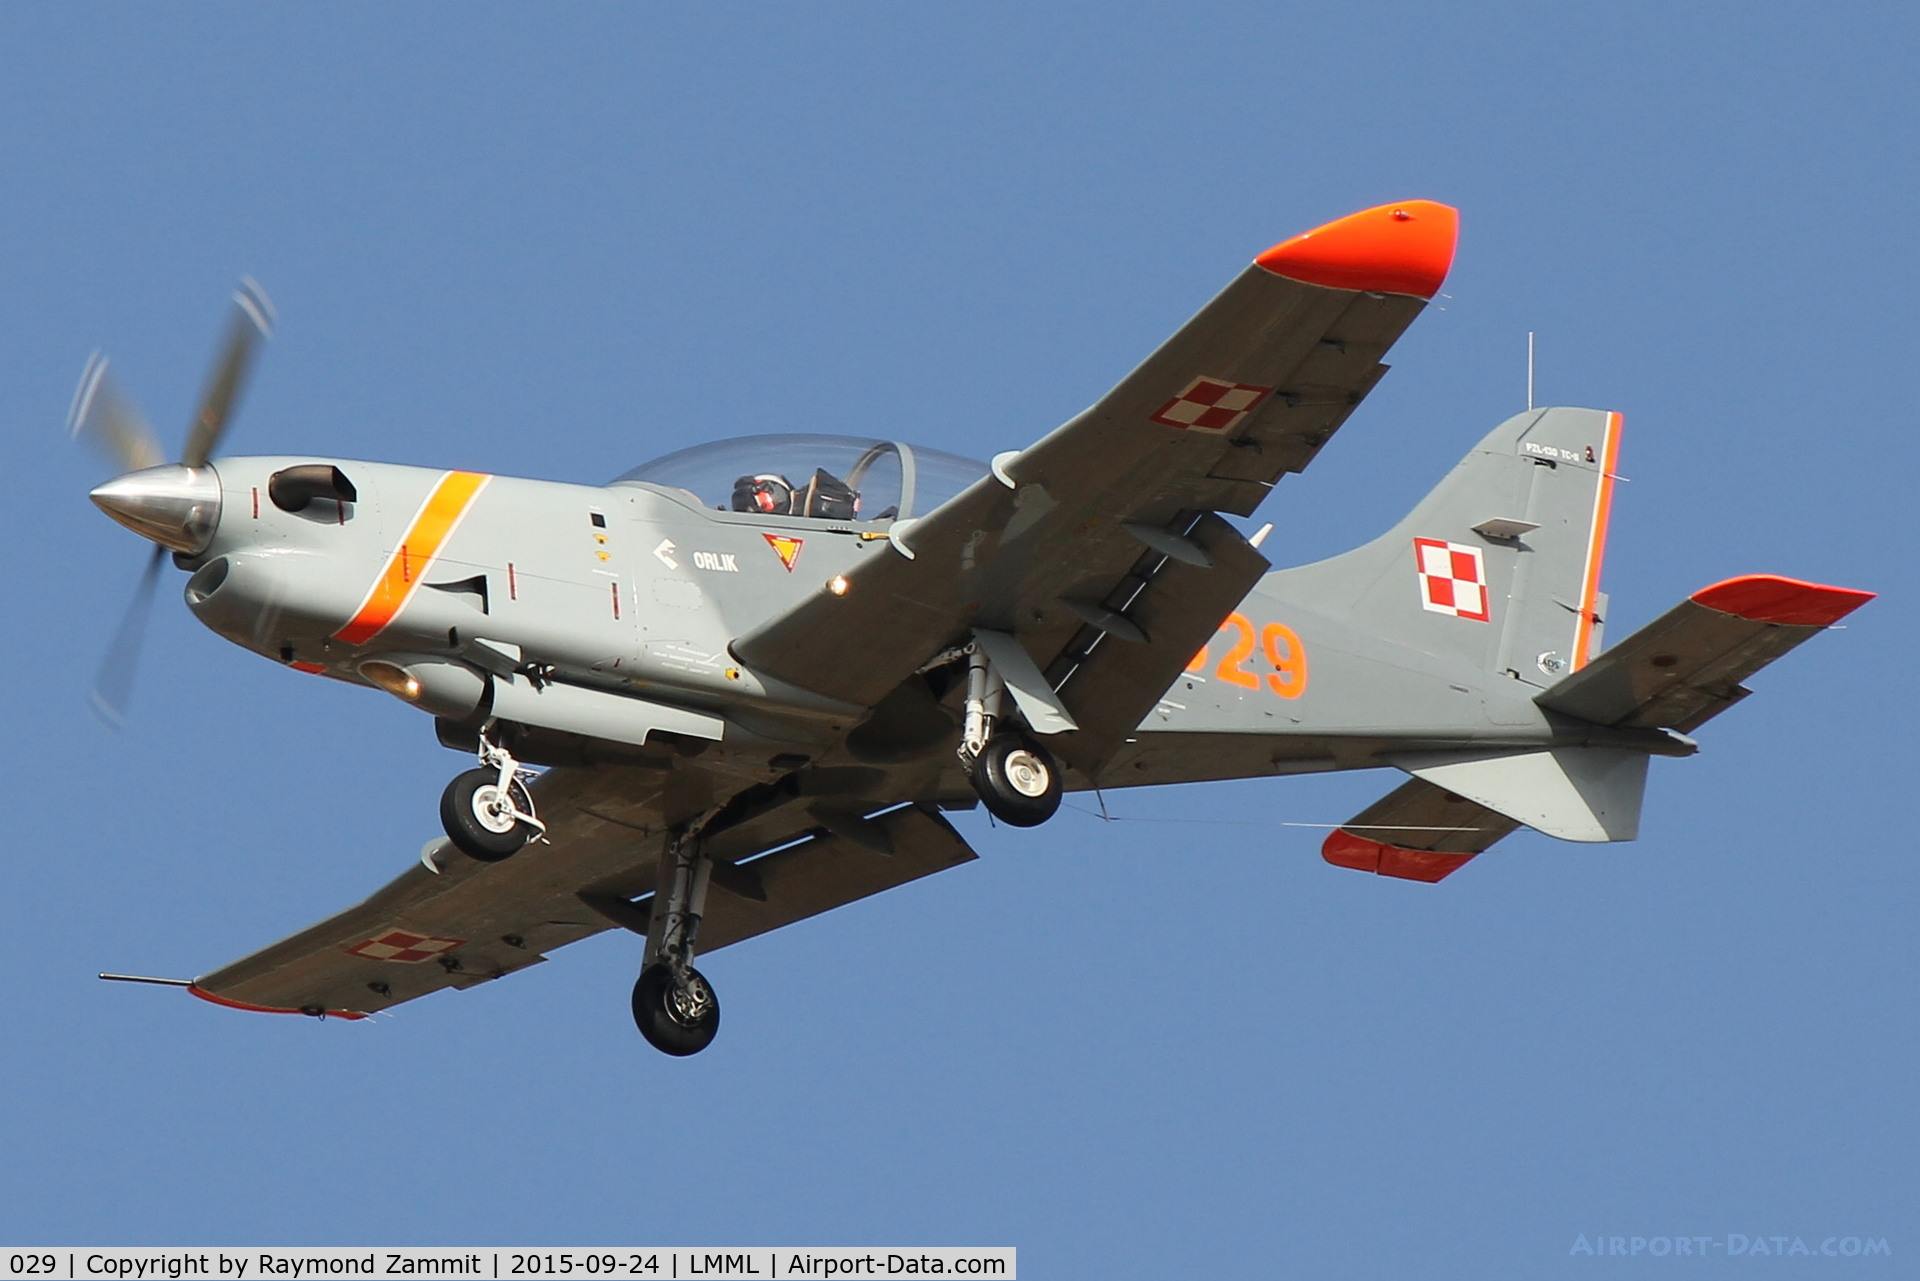 029, PZL-Okecie PZL-130TC-II Turbo Orlik C/N 03940029, PZL-130 Orlik 029 Polish Air Force